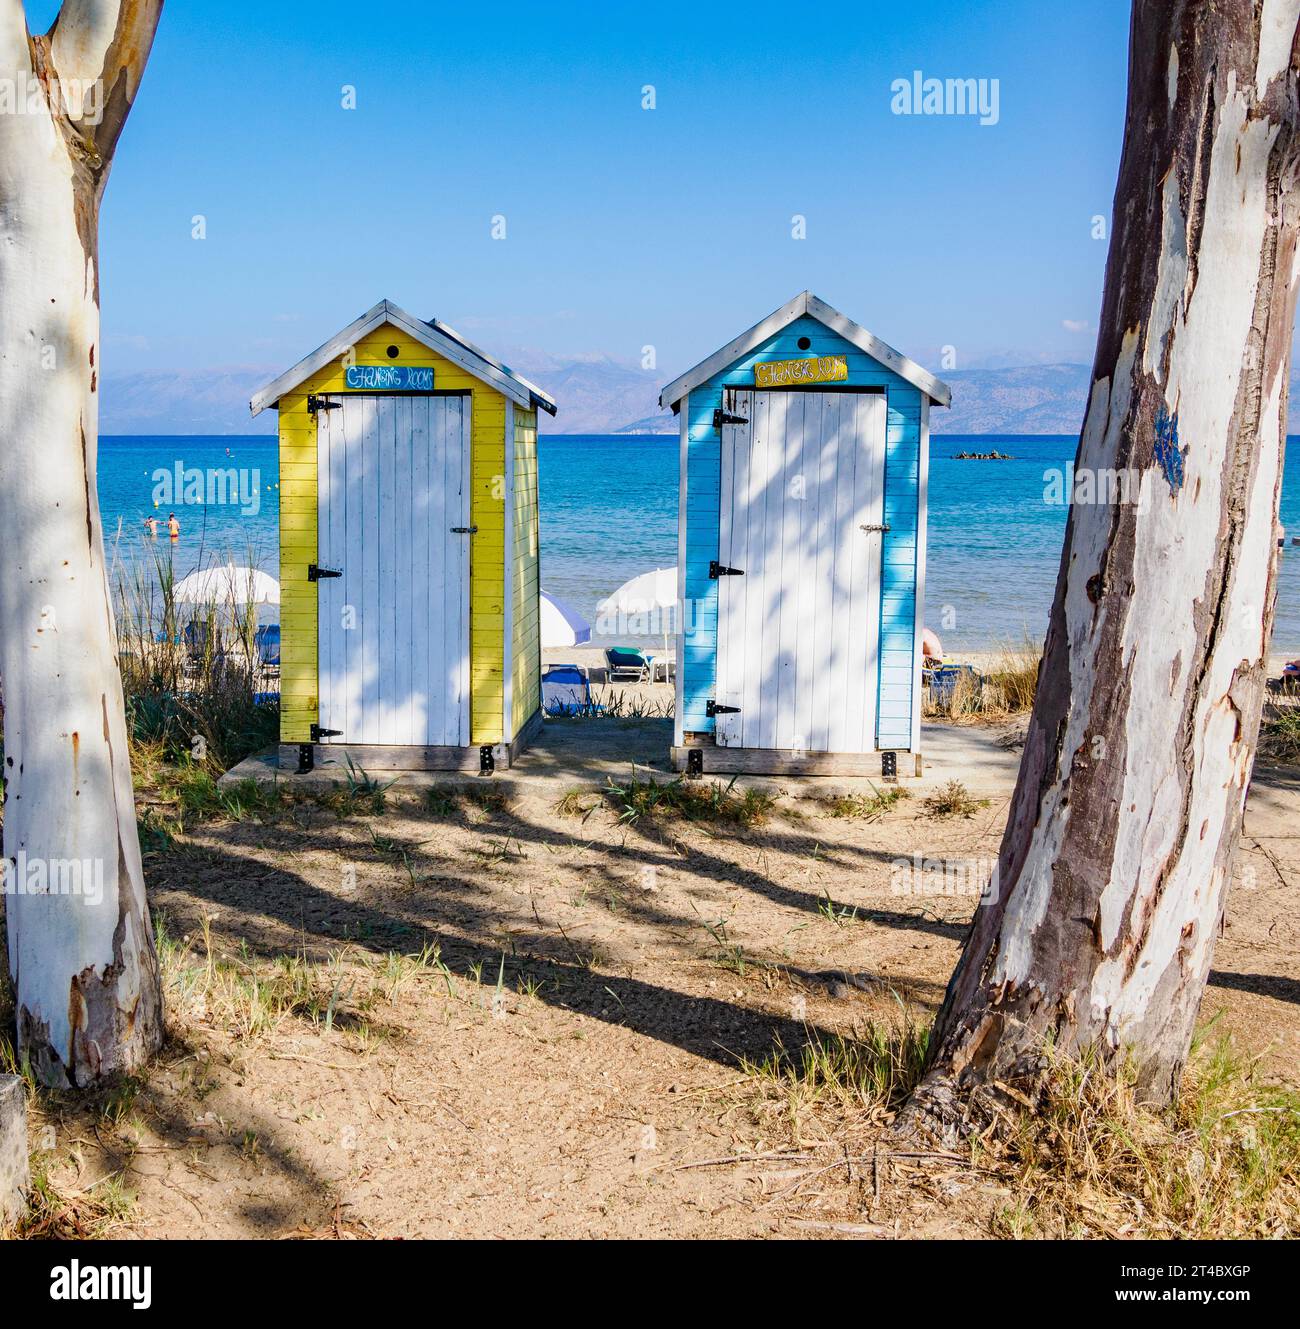 Changement de plage cabanes à Agios Spiridonas sur la côte nord de Corfou dans les îles grecques Ioniennes Banque D'Images